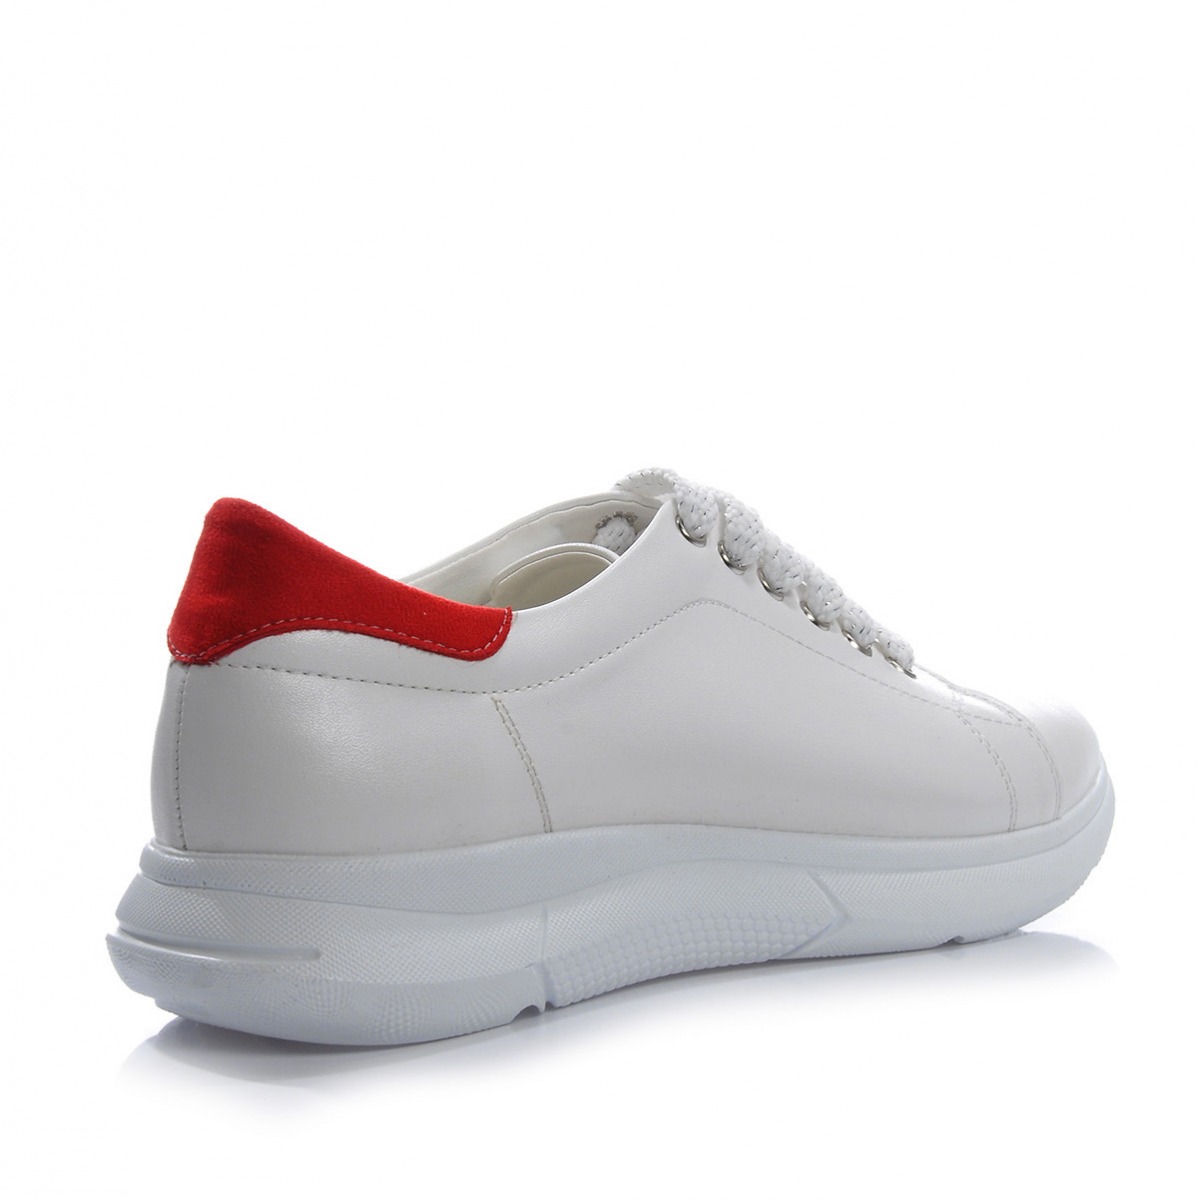 Flo Kadın  Beyaz- Kırmızı Spor Ayakkabı VZN-315Y. 1